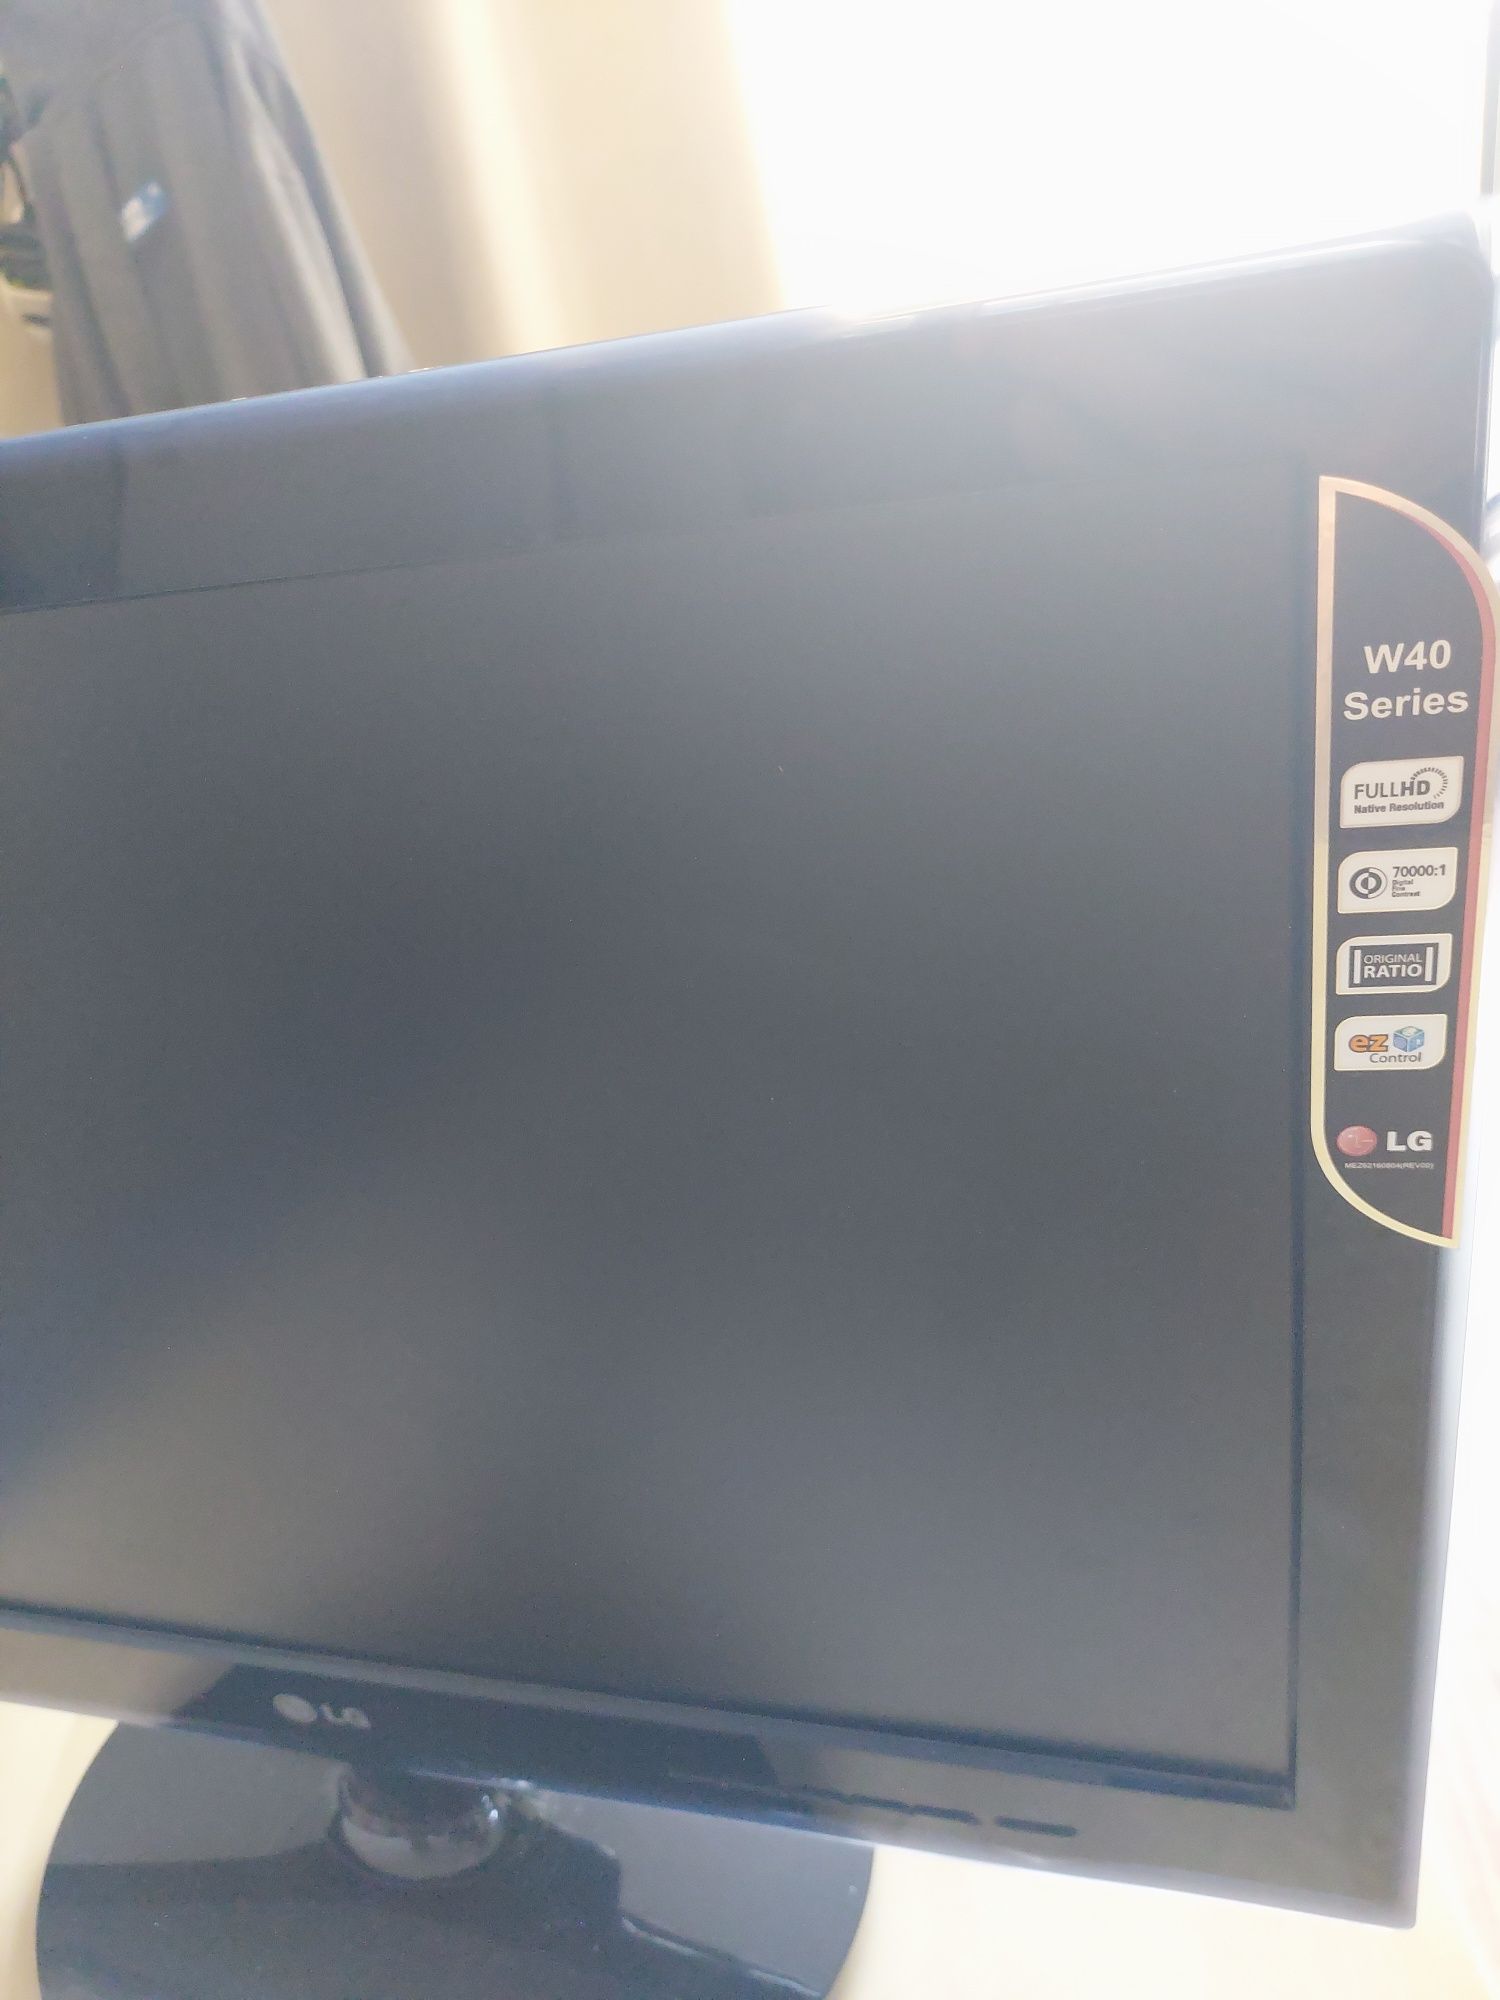 Monitor LG komputerowy wyrazisty obraz dynamiczny kontrast kabel zasil